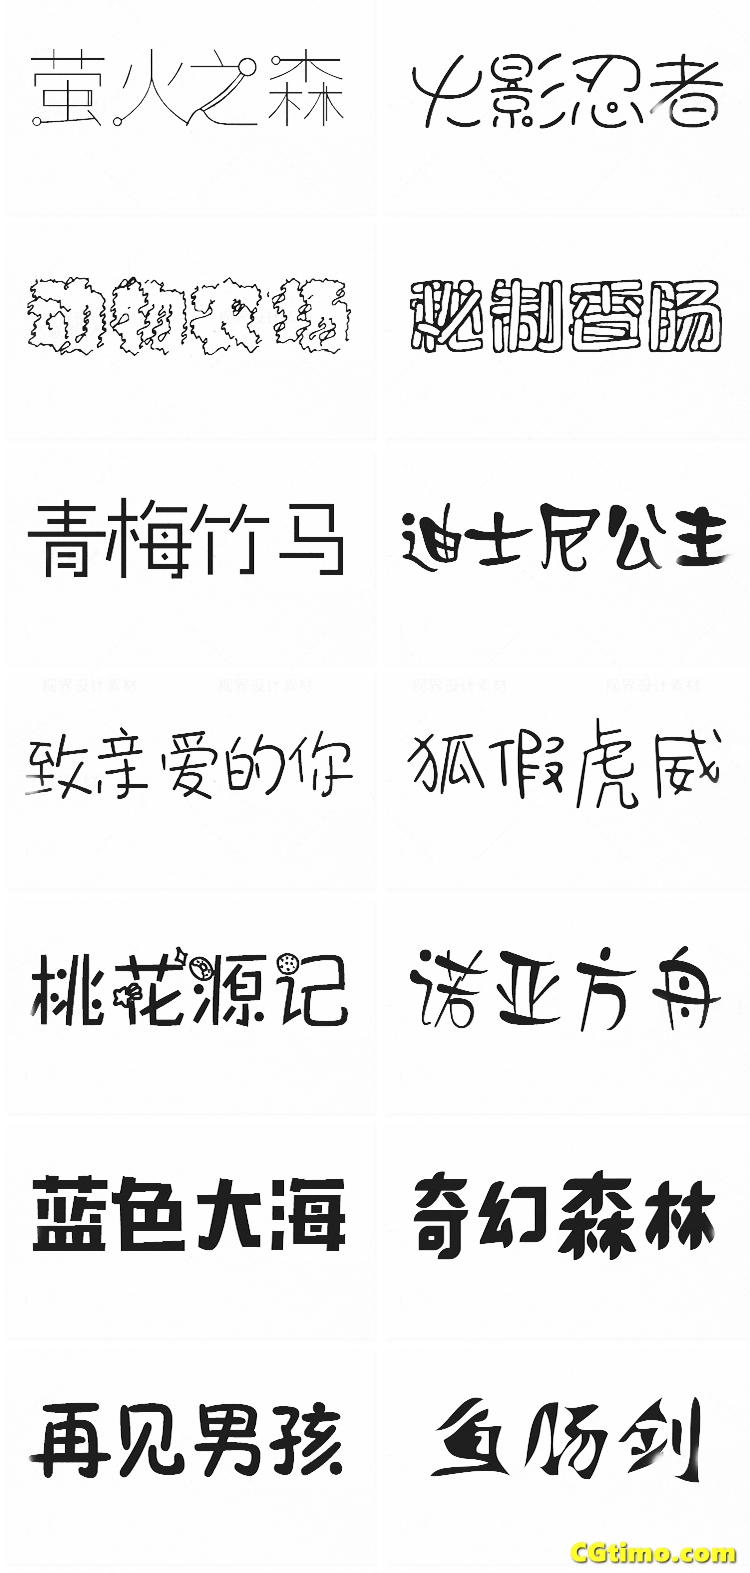 字体-儿童卡通涂鸦效果中文字体下载 字体下载 第46张